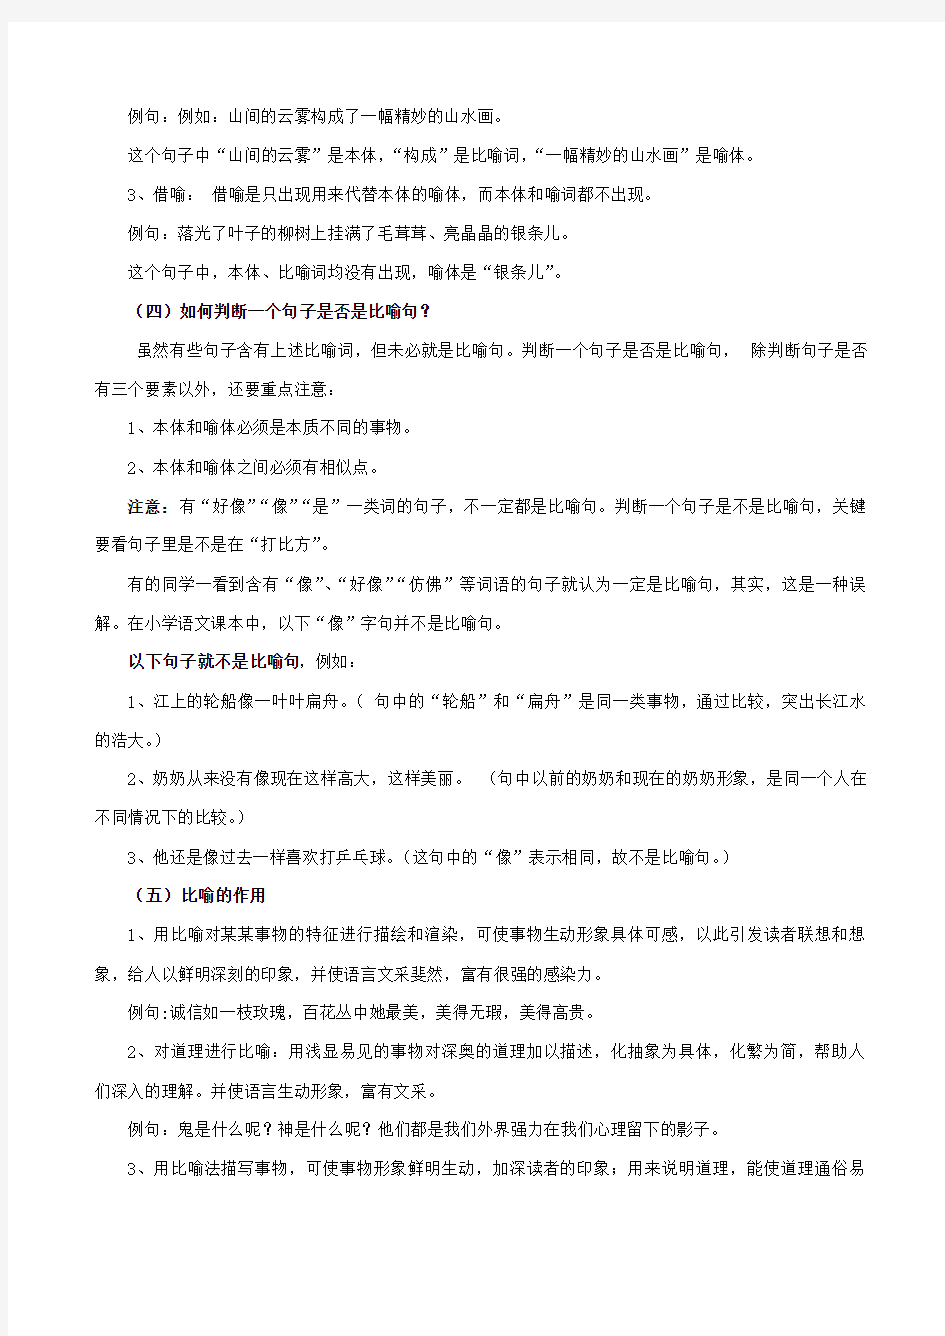 小学语文常用修辞手法教案课件.pdf